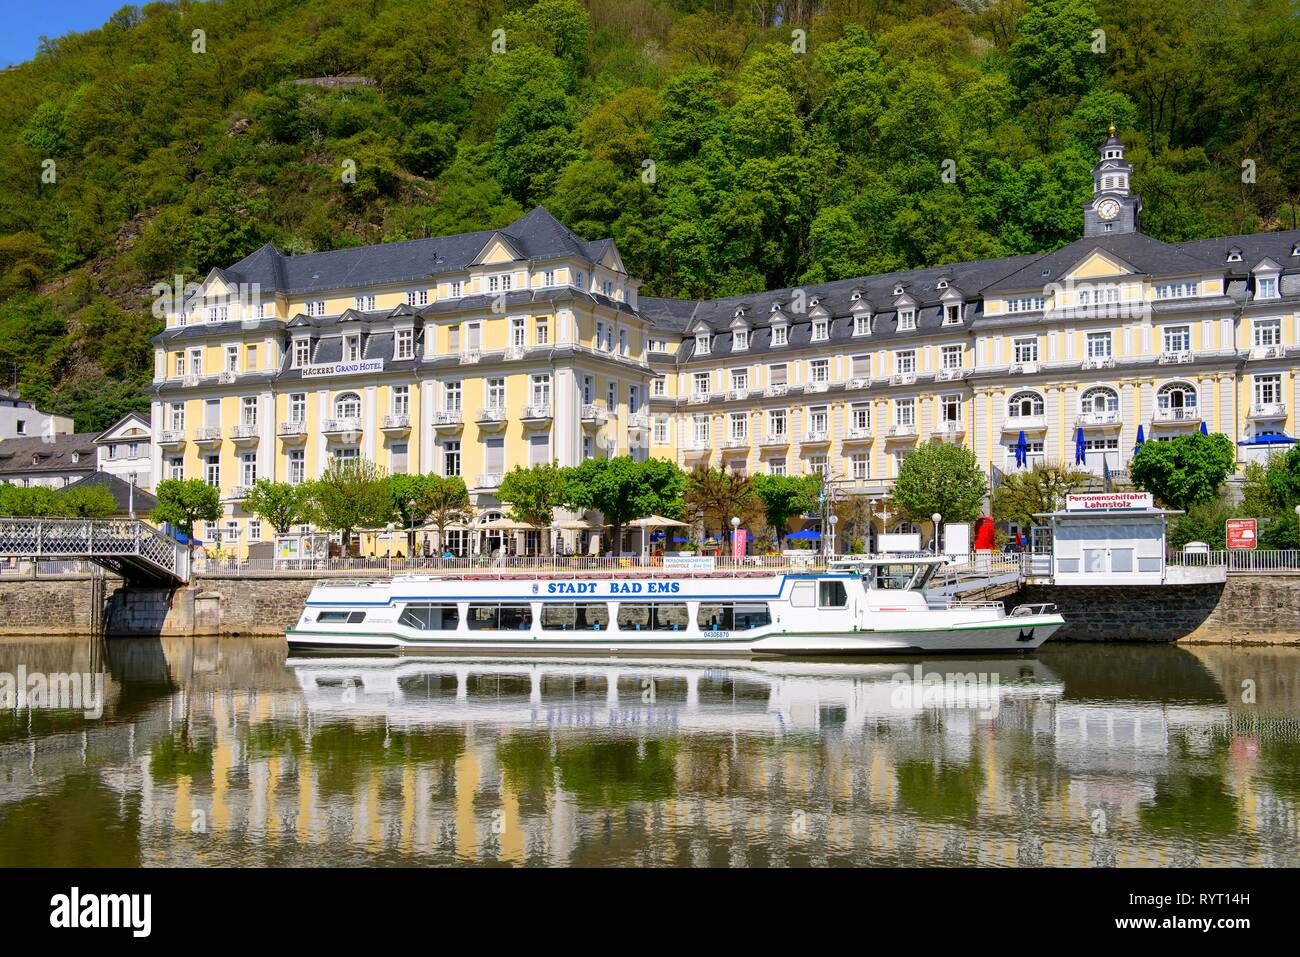 Nave passeggeri ad ormeggio nella parte anteriore del Grand Hotel di Bad Ems an der Lahn, Renania-Palatinato, Germania Foto Stock